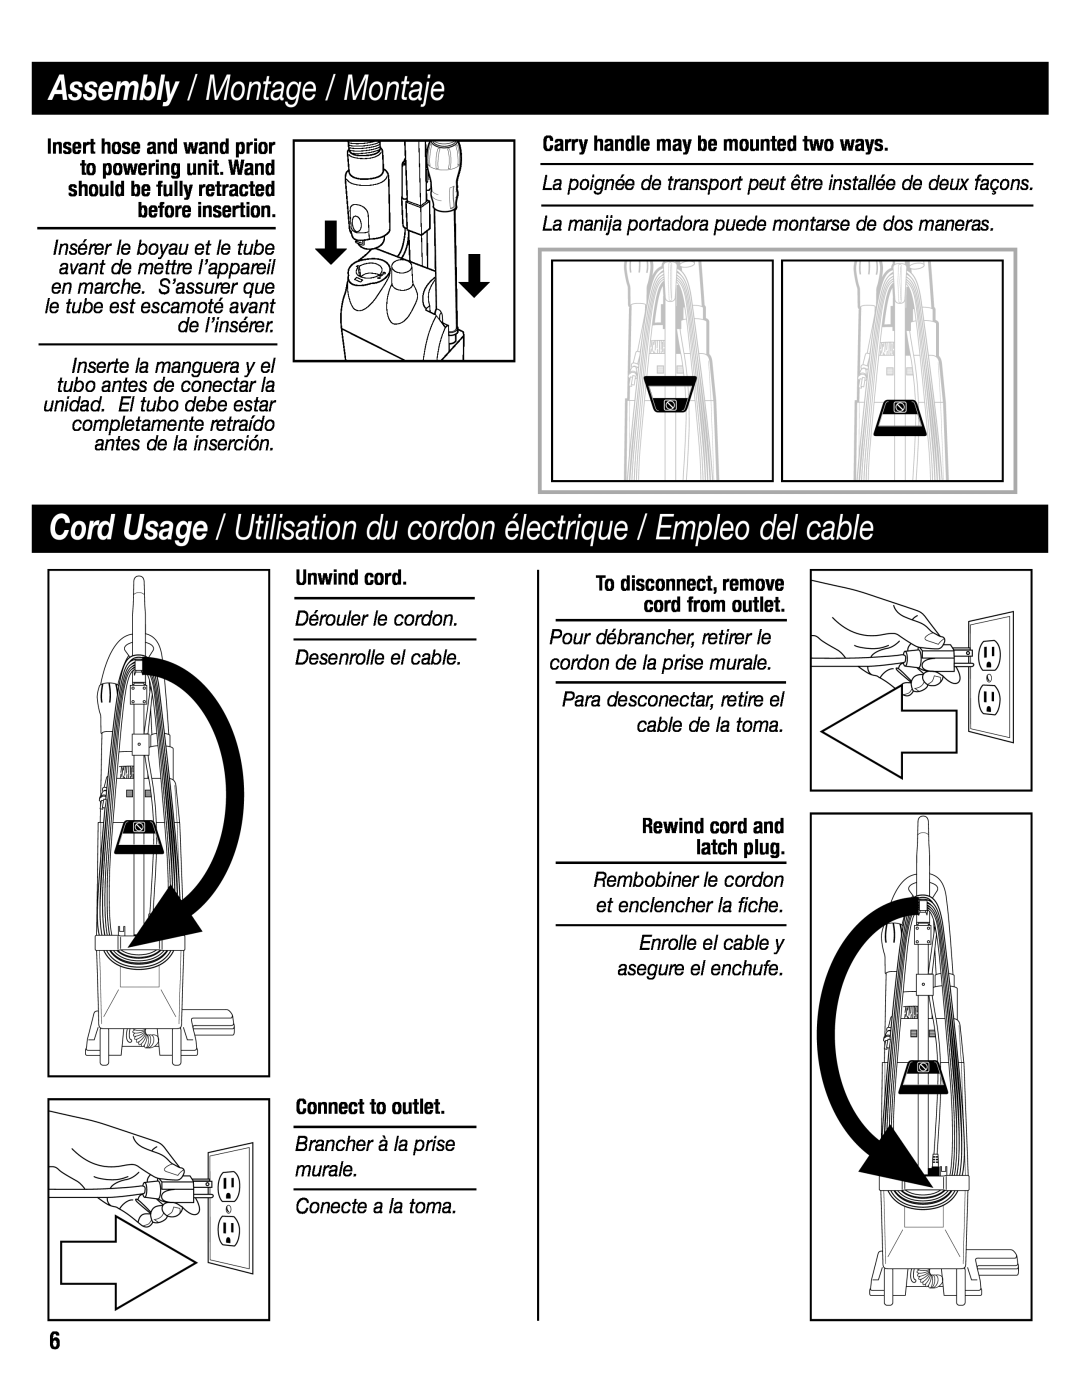 Eureka SC6610 Cord Usage / Utilisation du cordon électrique / Empleo del cable, Assembly / Montage / Montaje, Unwind cord 